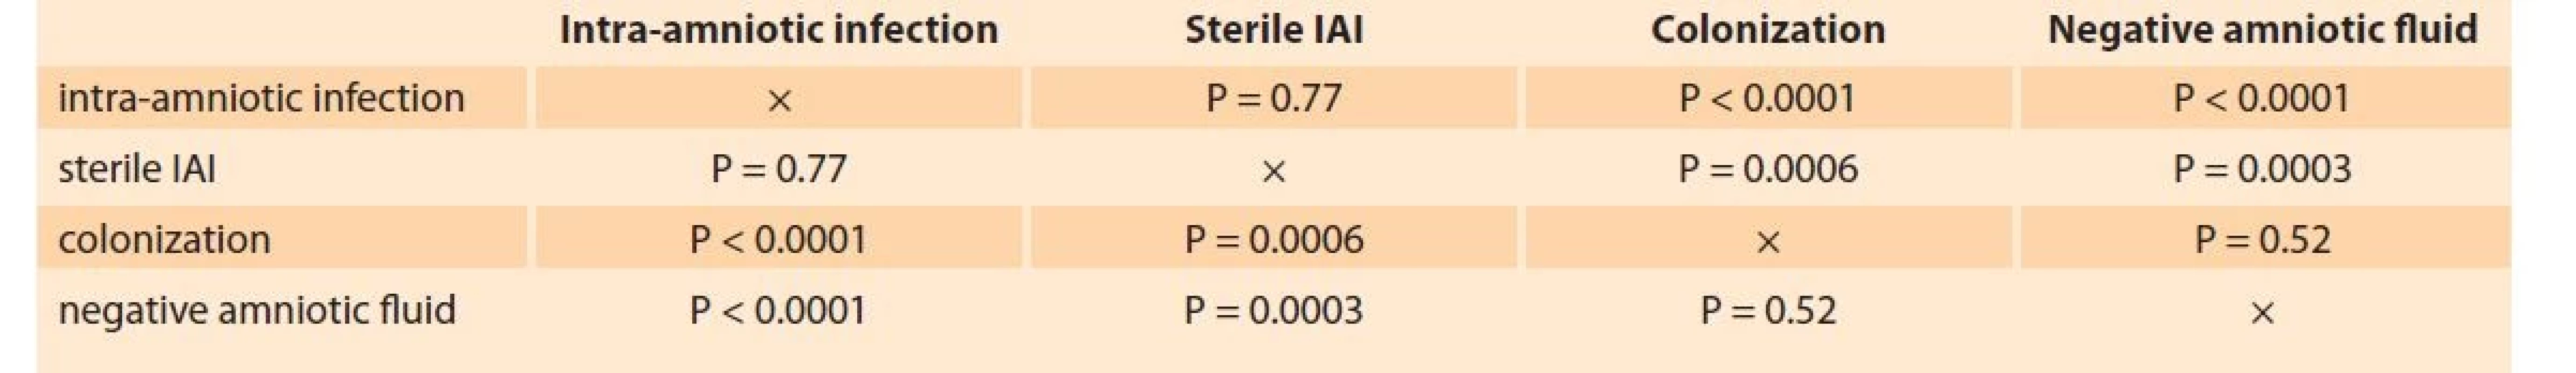 Comparisons of the levels of soluble CD93 among women with intra-amniotic infection, sterile intra-amniotic
inflammation, colonization of the amniotic cavity and negative amniotic fluid.<br>
Tab. 2. Srovnání hladin solubilního CD93 v plodové vodě mezi skupinami žen s intra-amniální infekcí, sterilním intra-amniálním
zánětem, kolonizací do amniální dutiny a negativní plodovou vodou.